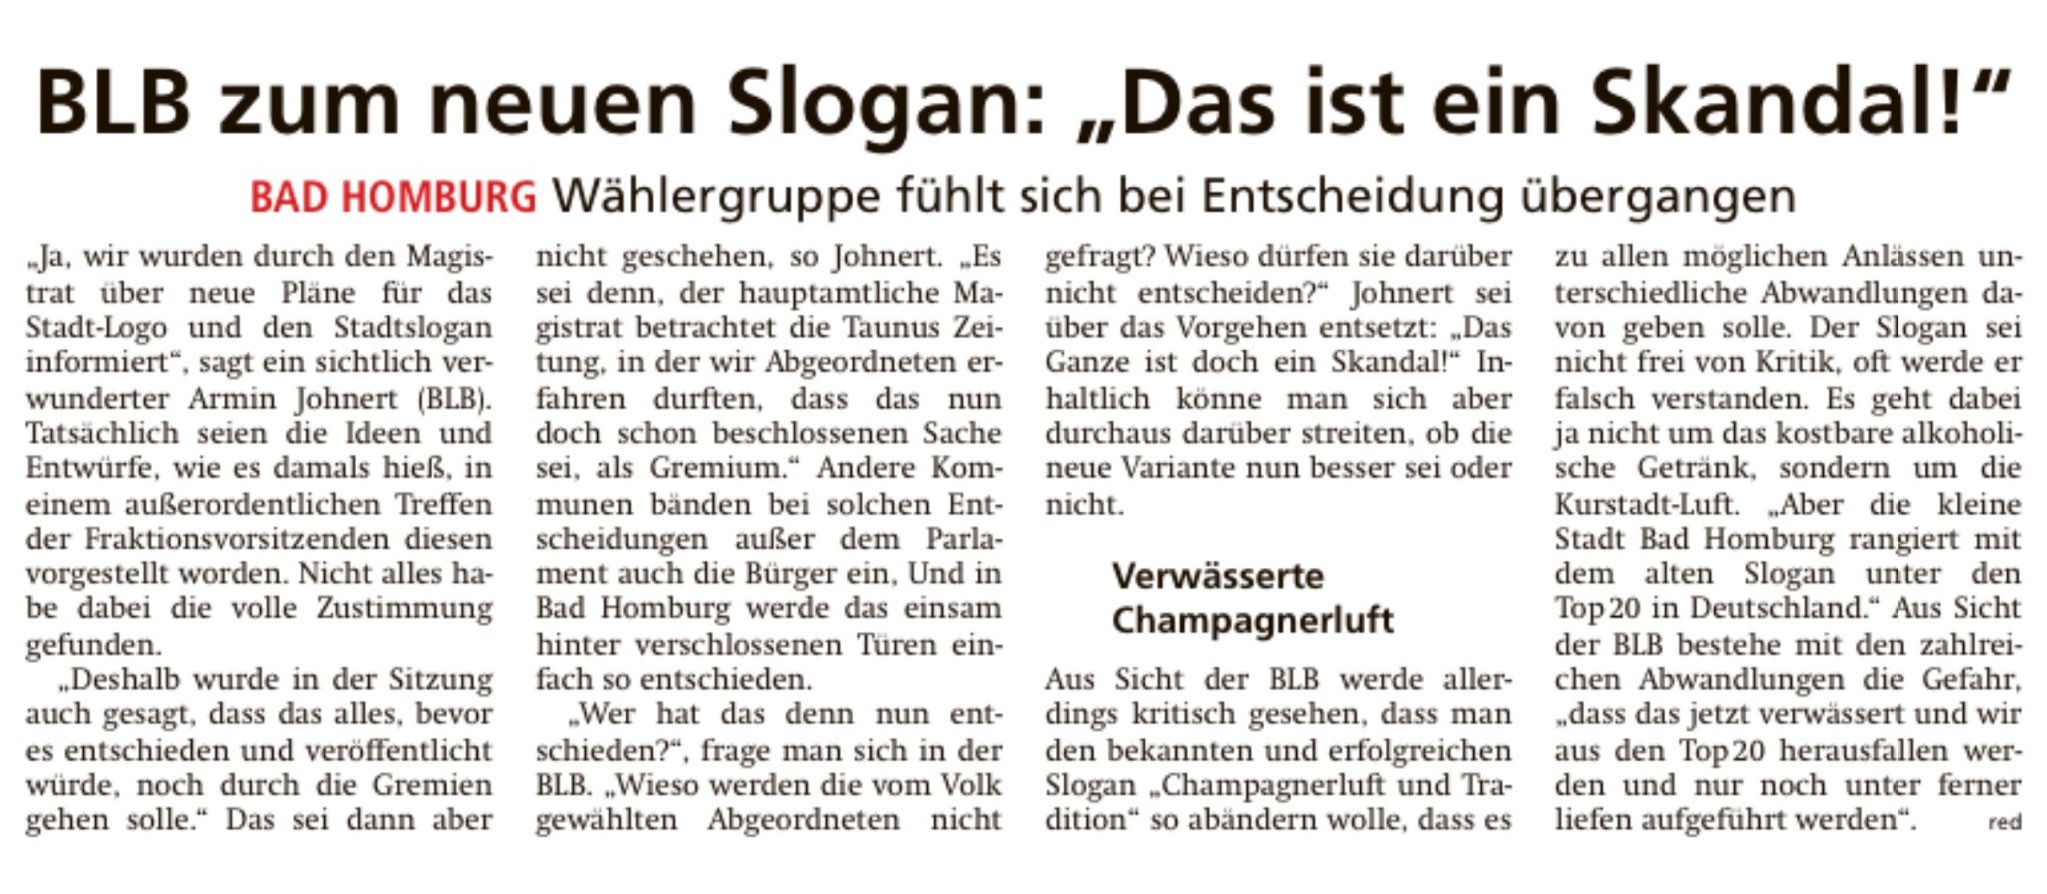 Taunus Zeitung vom 13.11.2021 Slogan in Bad Homburg